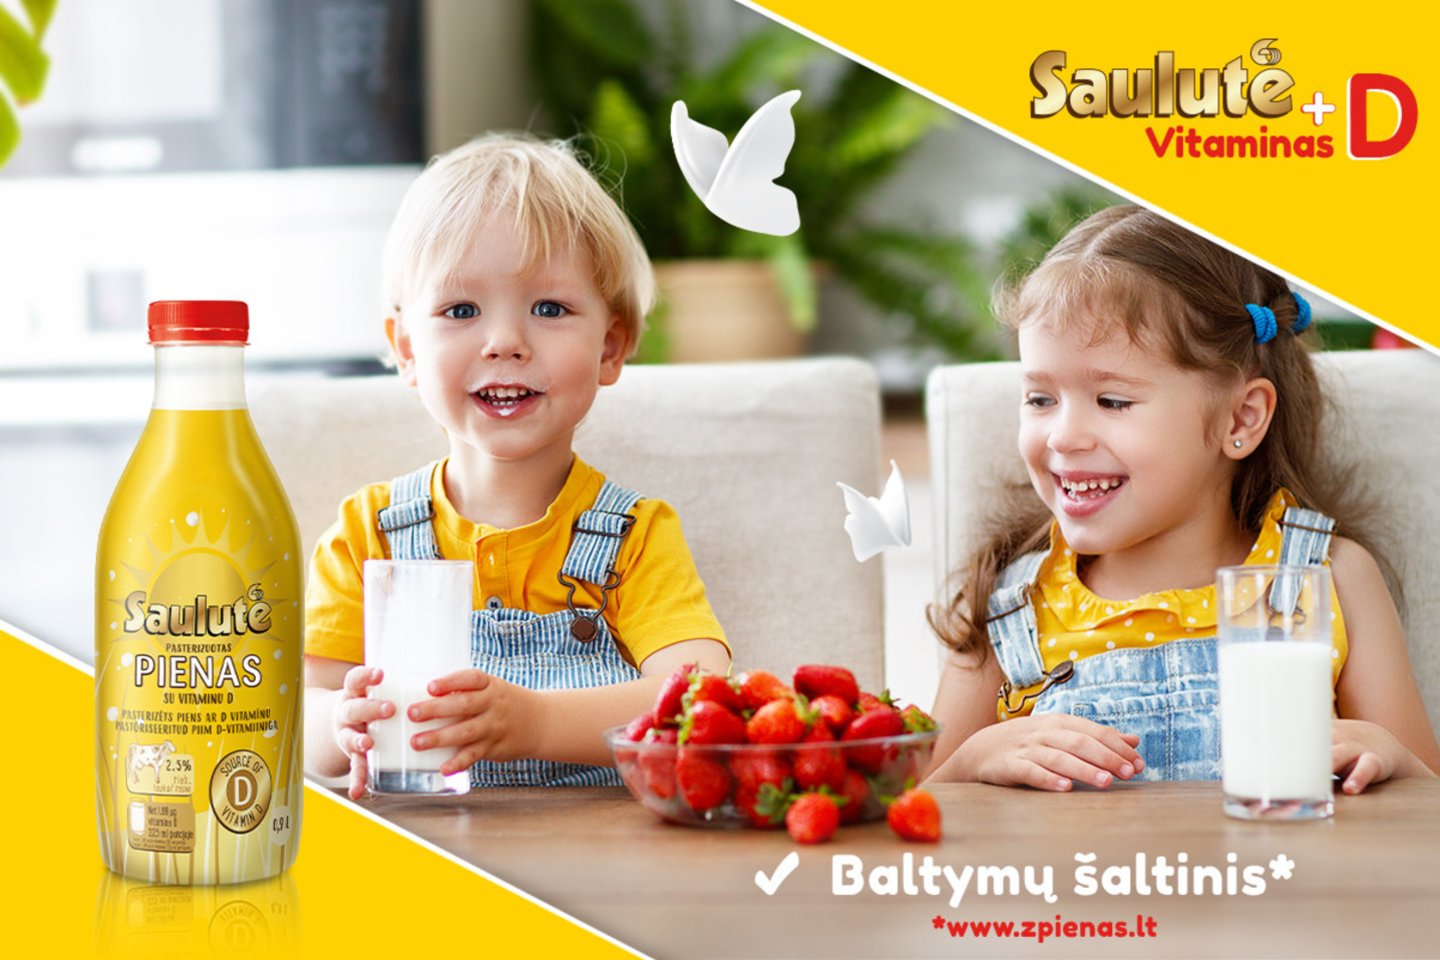 Pieno gaminių inovatorė, kurios gaminamus produktus pamėgo ne tik Lietuvos gyventojai, tarp kitų gaminių siūlo ir vitaminu D papildytus pieno produktus „Saulutė“ – pieną, grietinę bei varškę.